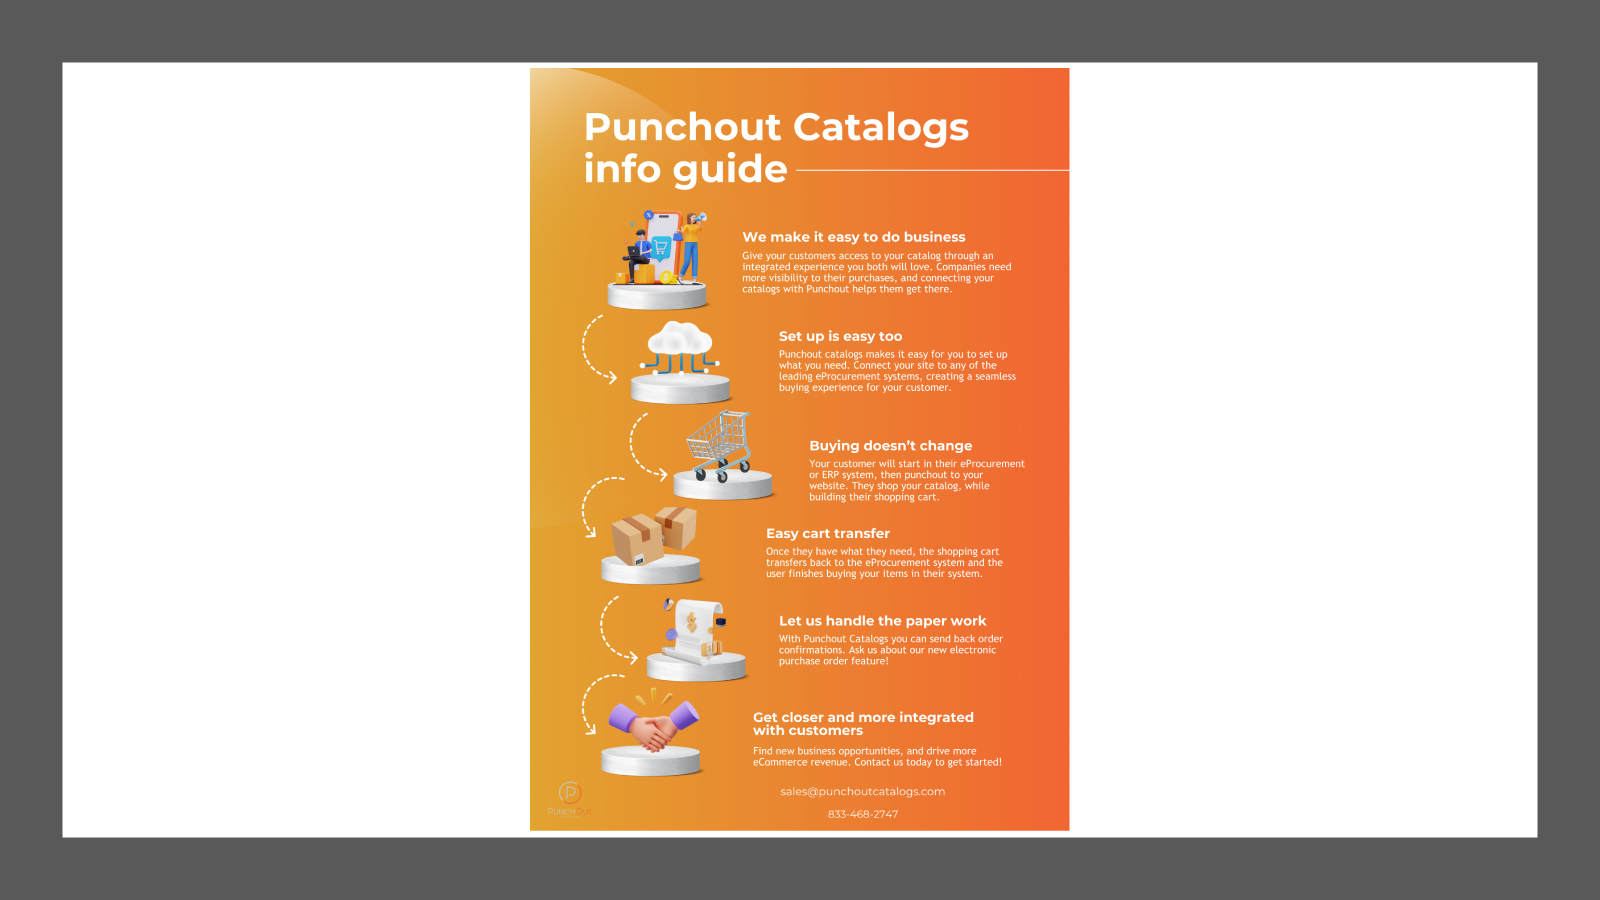 Punchout-kataloger hurtig info guide